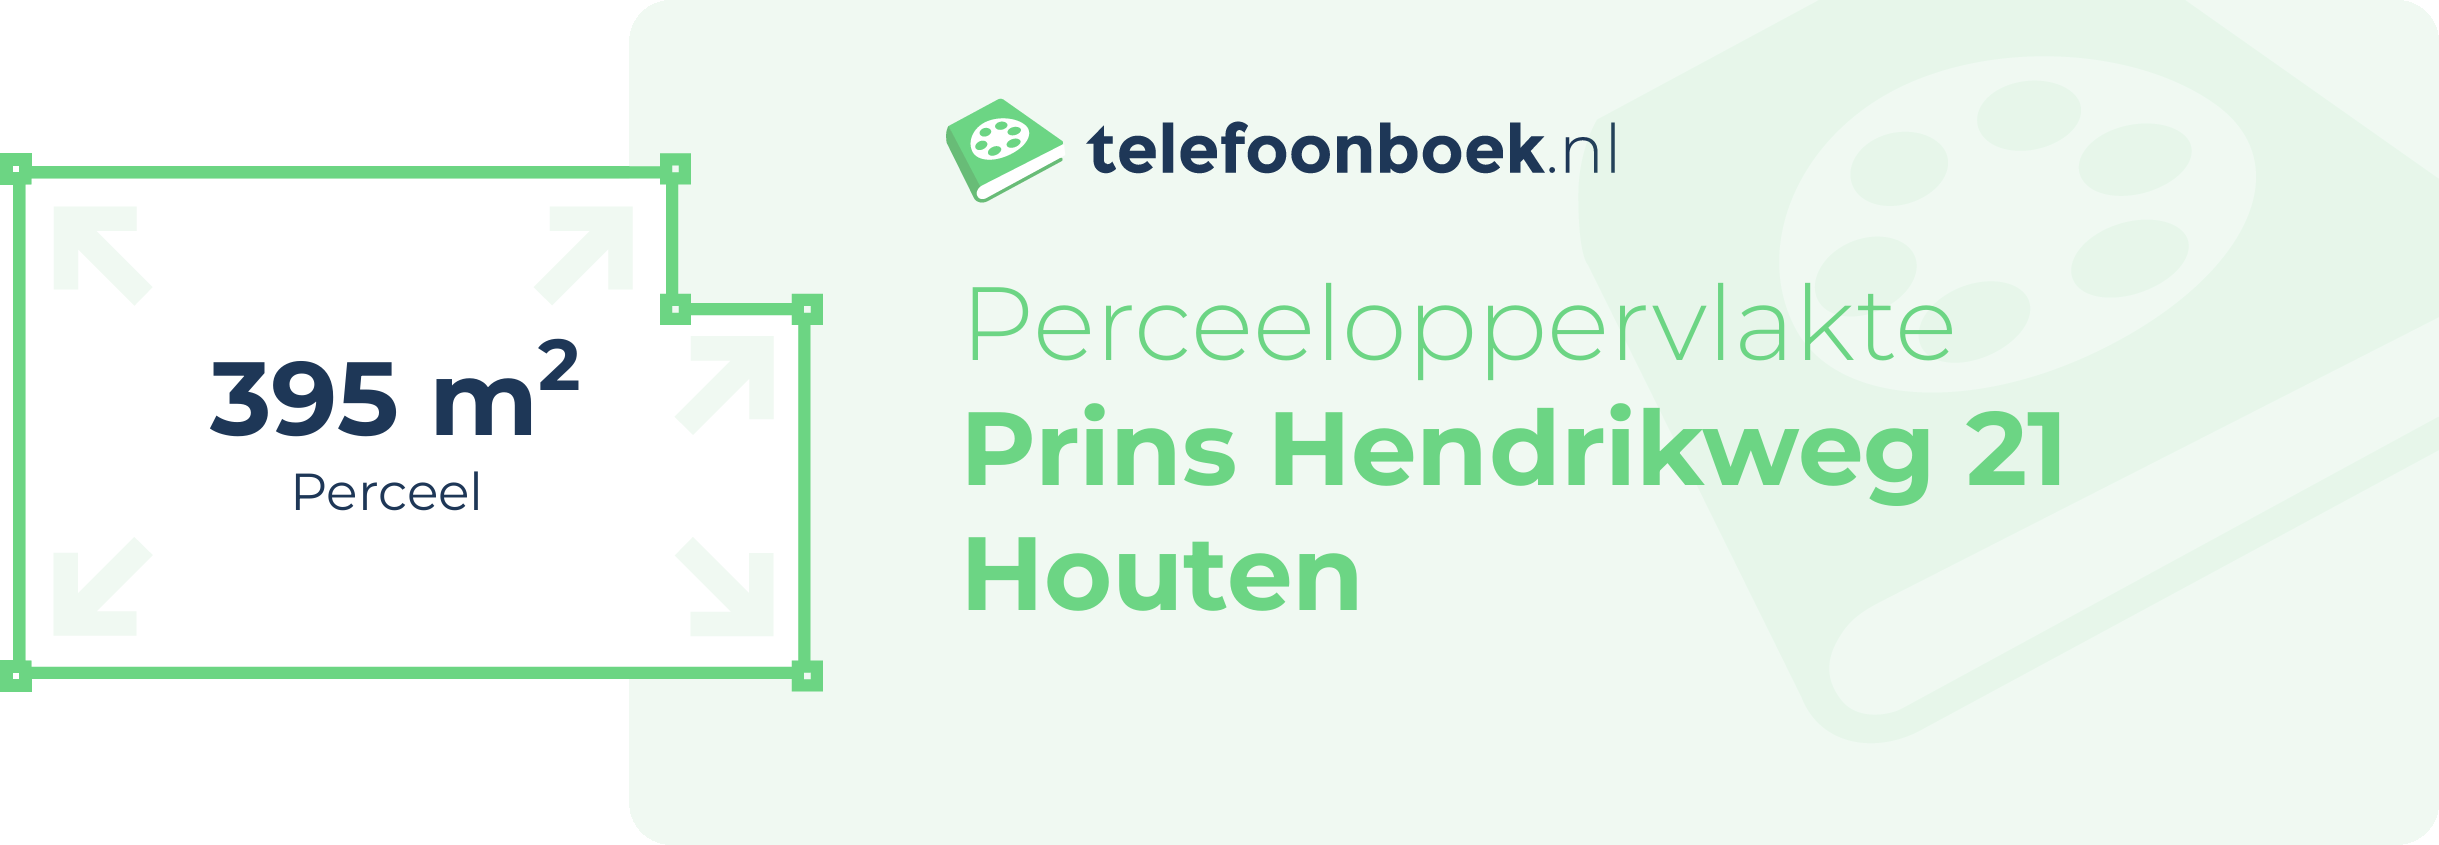 Perceeloppervlakte Prins Hendrikweg 21 Houten